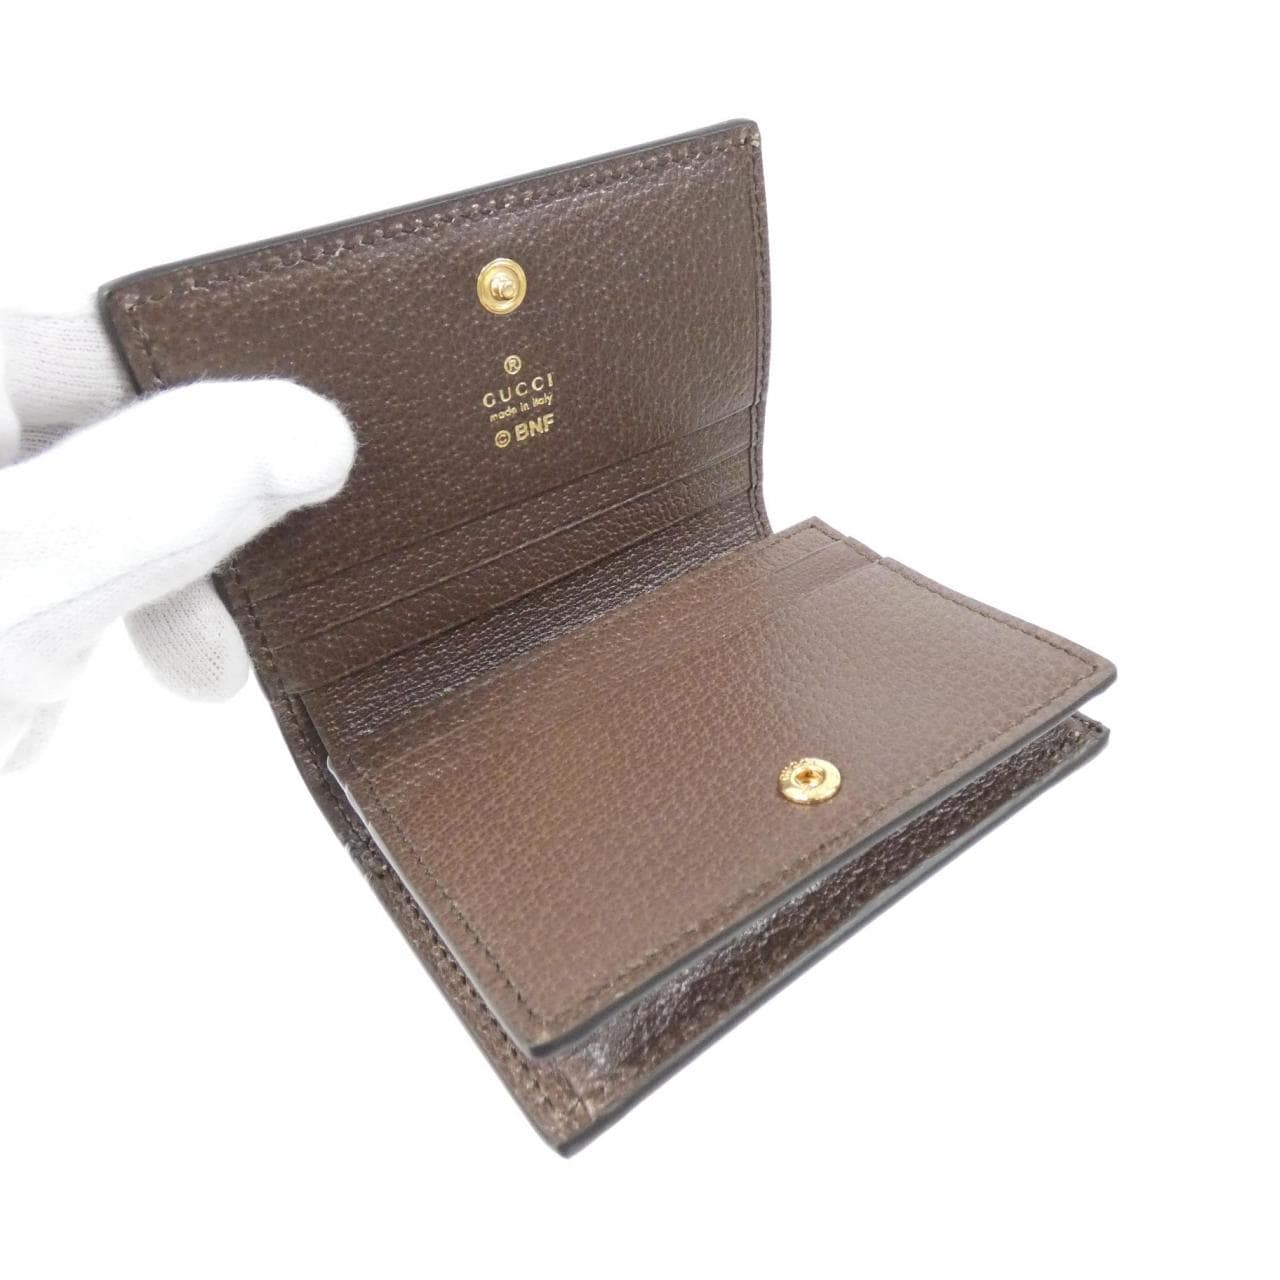 Gucci 701009 U2UAG wallet